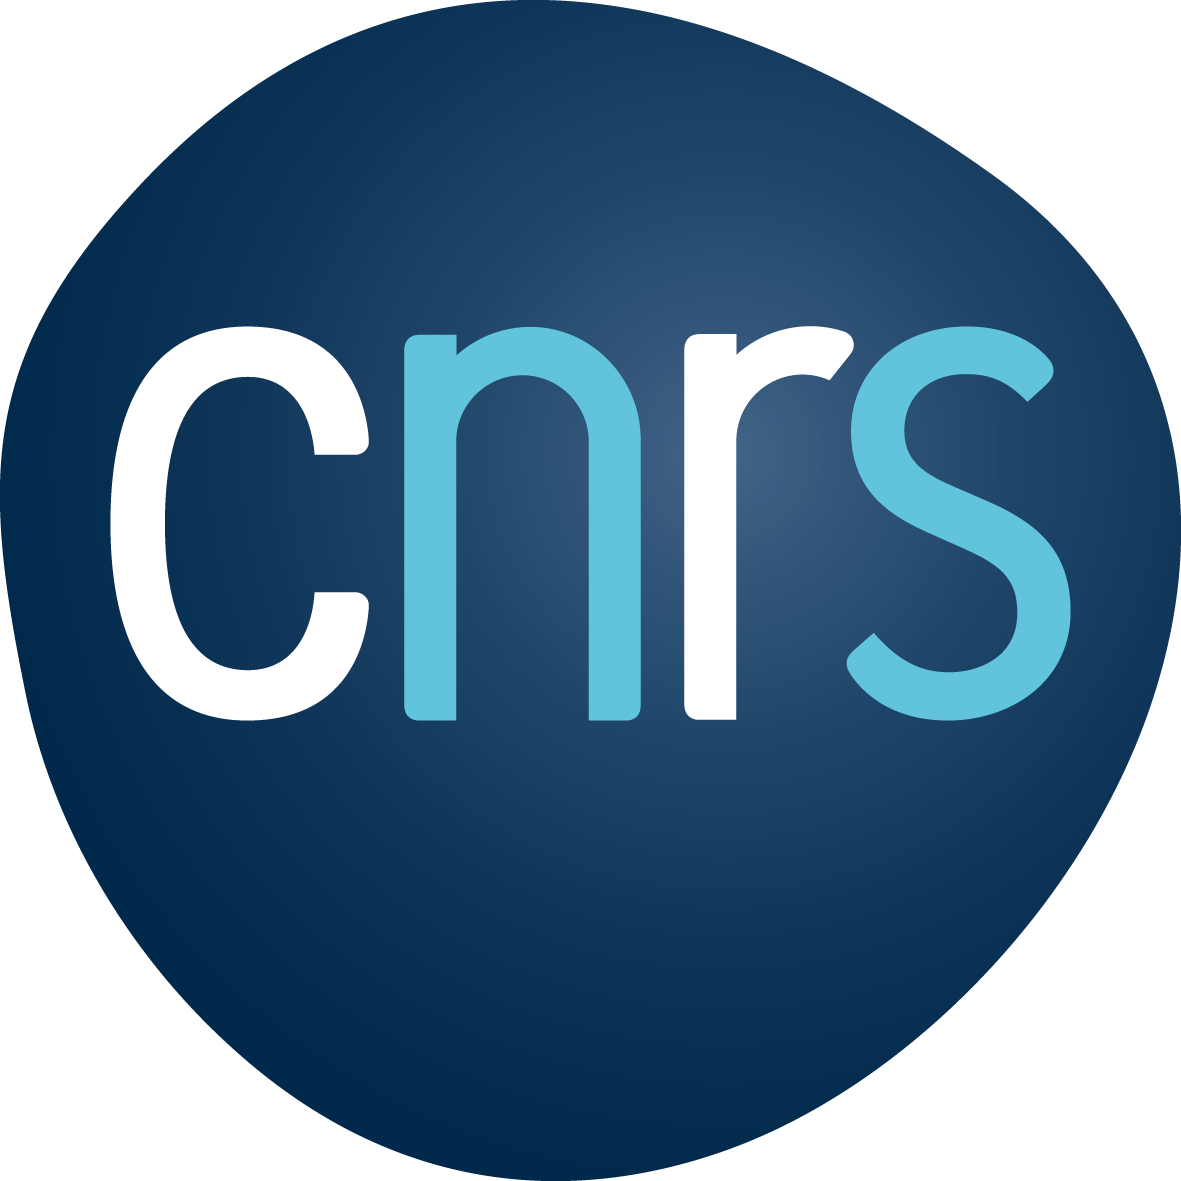 La campagne CNRS de recrutement des ingénieur·e·s est ouverte. Les candidat·e·s peuvent se présenter sur le concours n°34 (traitement de données en sciences sociales) affecté au GEMASS